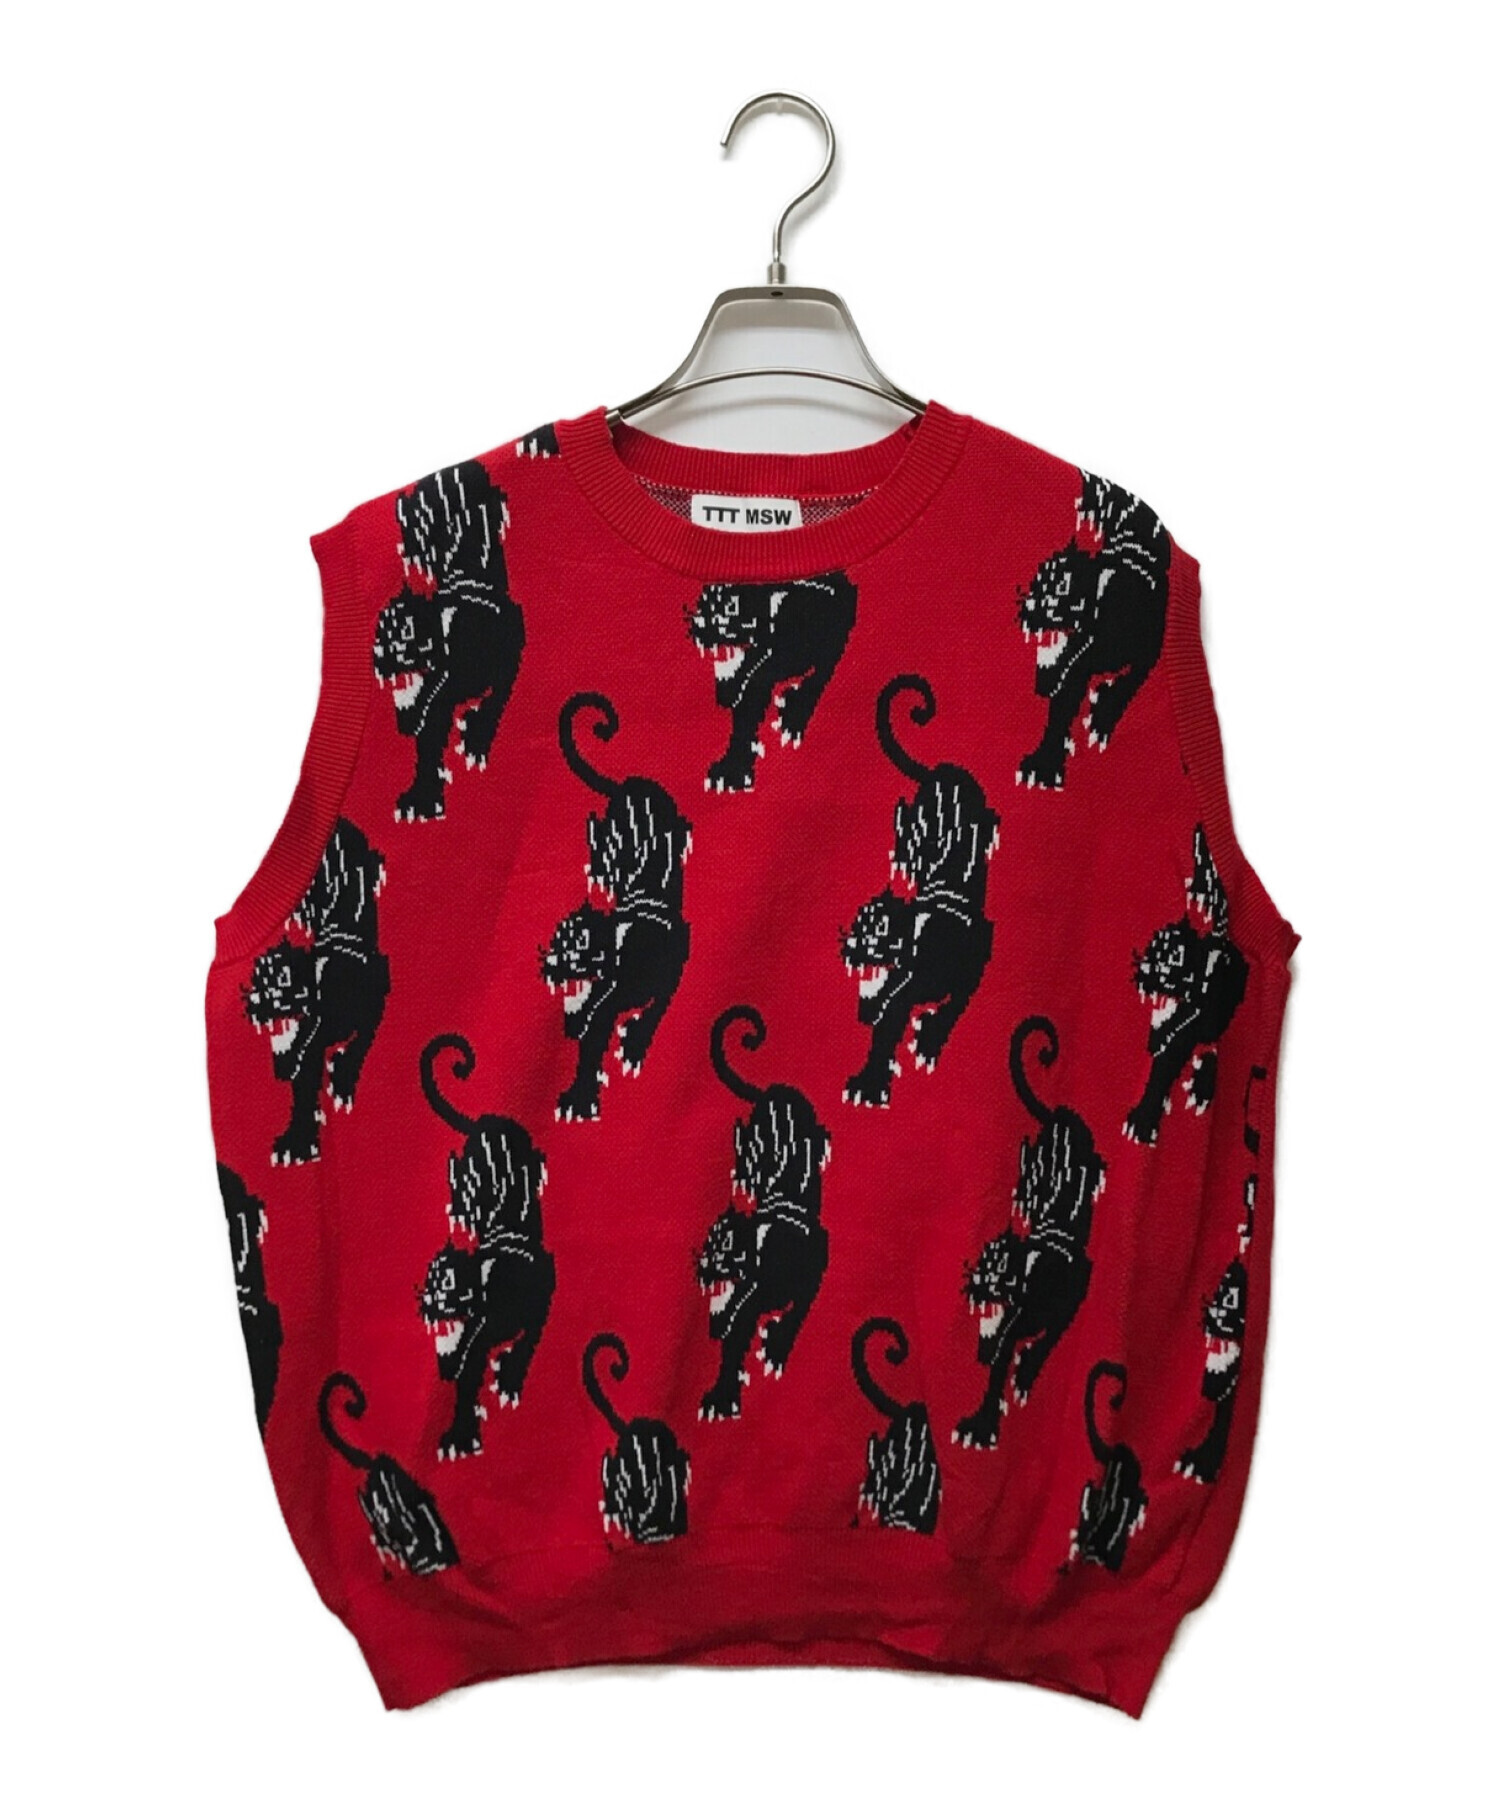 TTT MSW (ティーモダンストリートウェア) Panther Knit Vest レッド サイズ:M